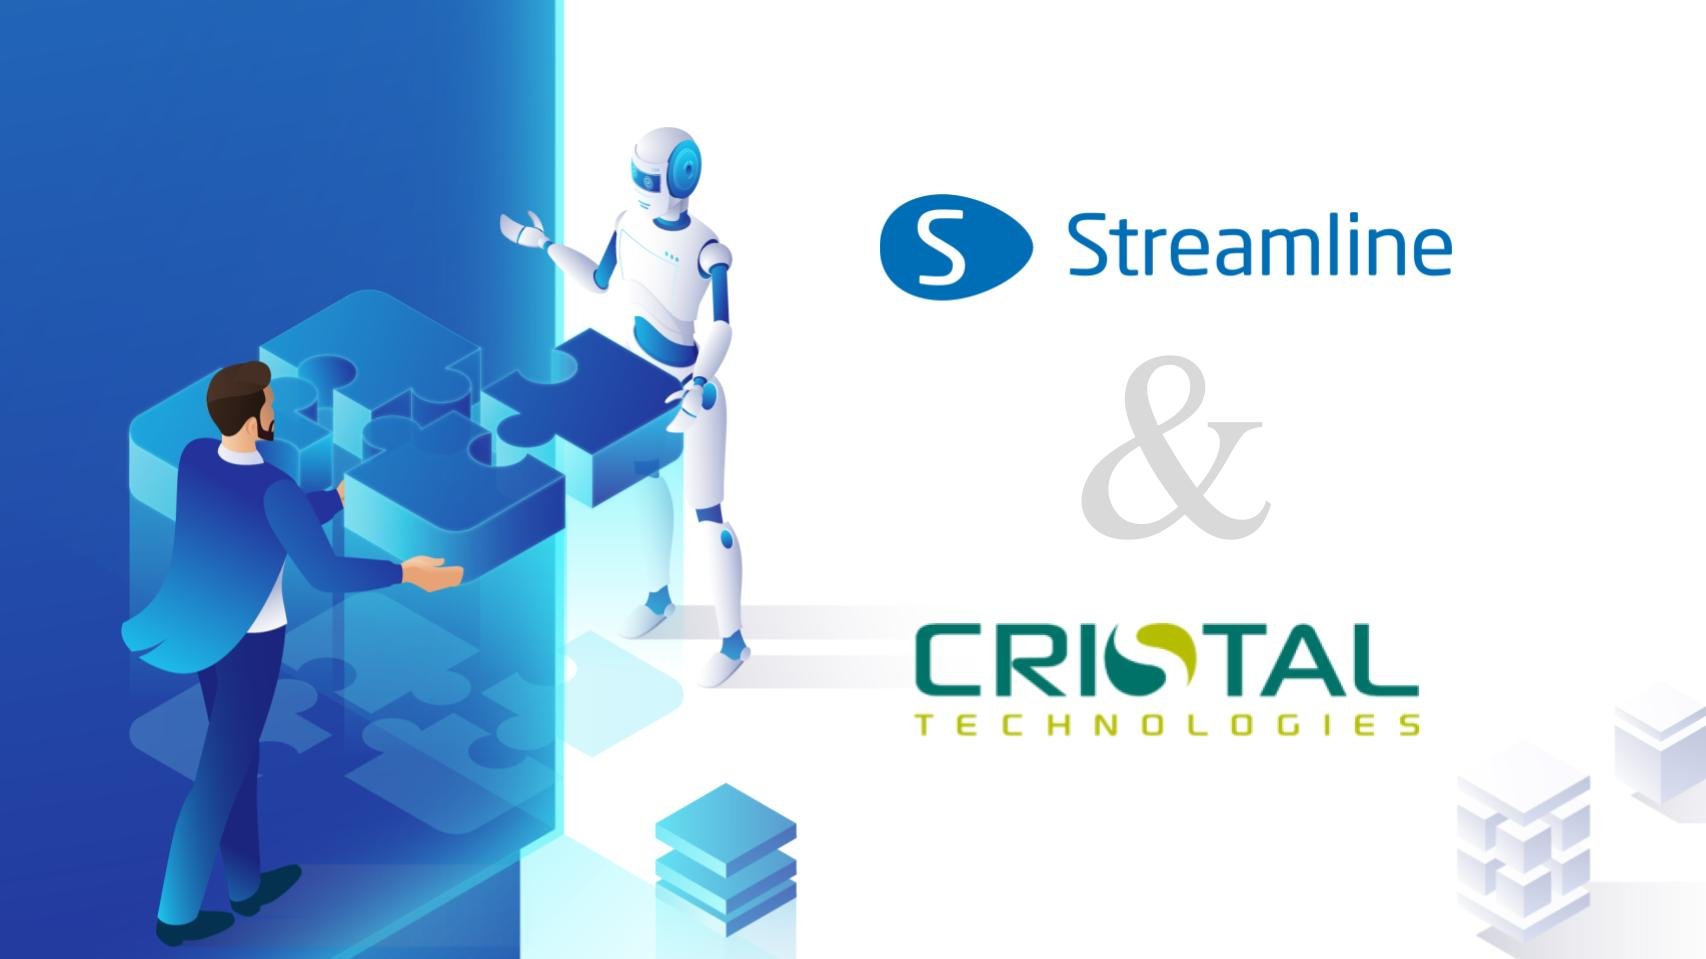 GMDH Streamline a Cristal Technologies oznámily strategické partnerství